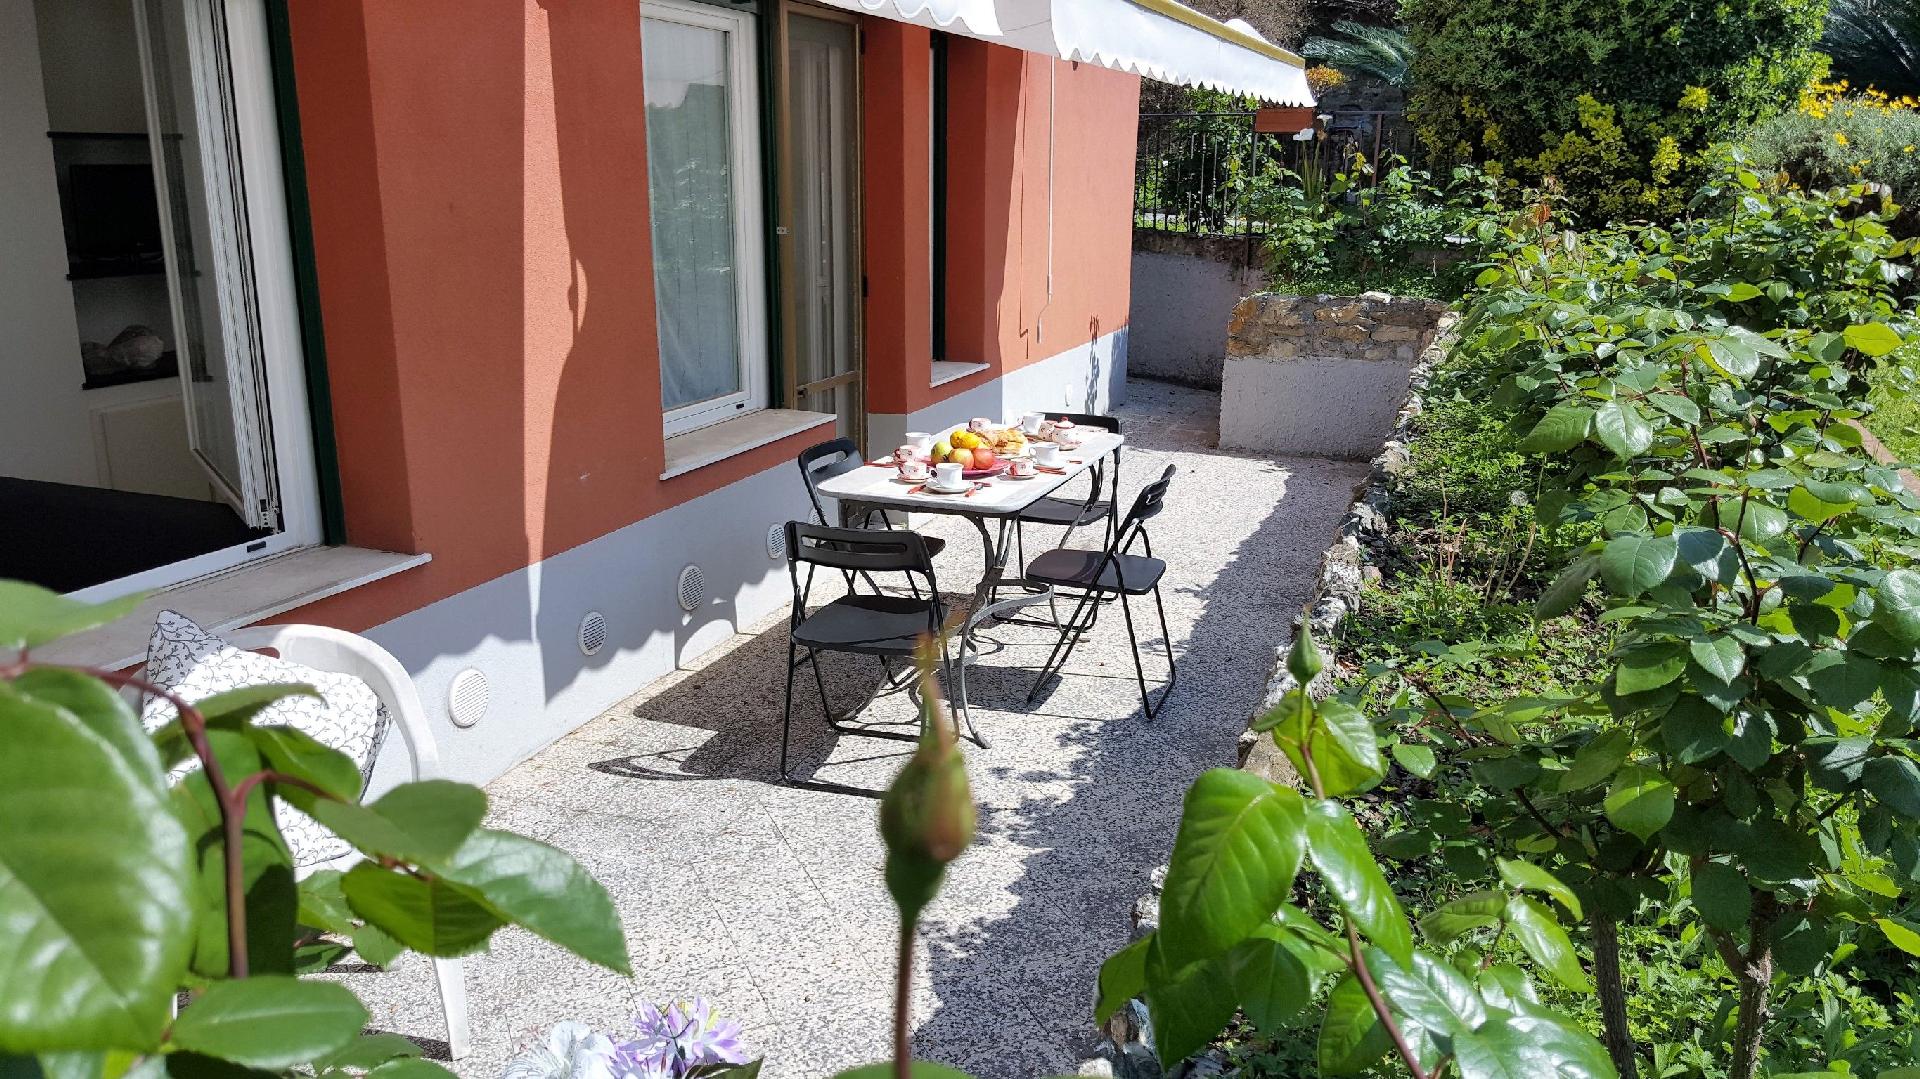 Ferienwohnung für 5 Personen ca. 85 m² i Ferienwohnung in Italien